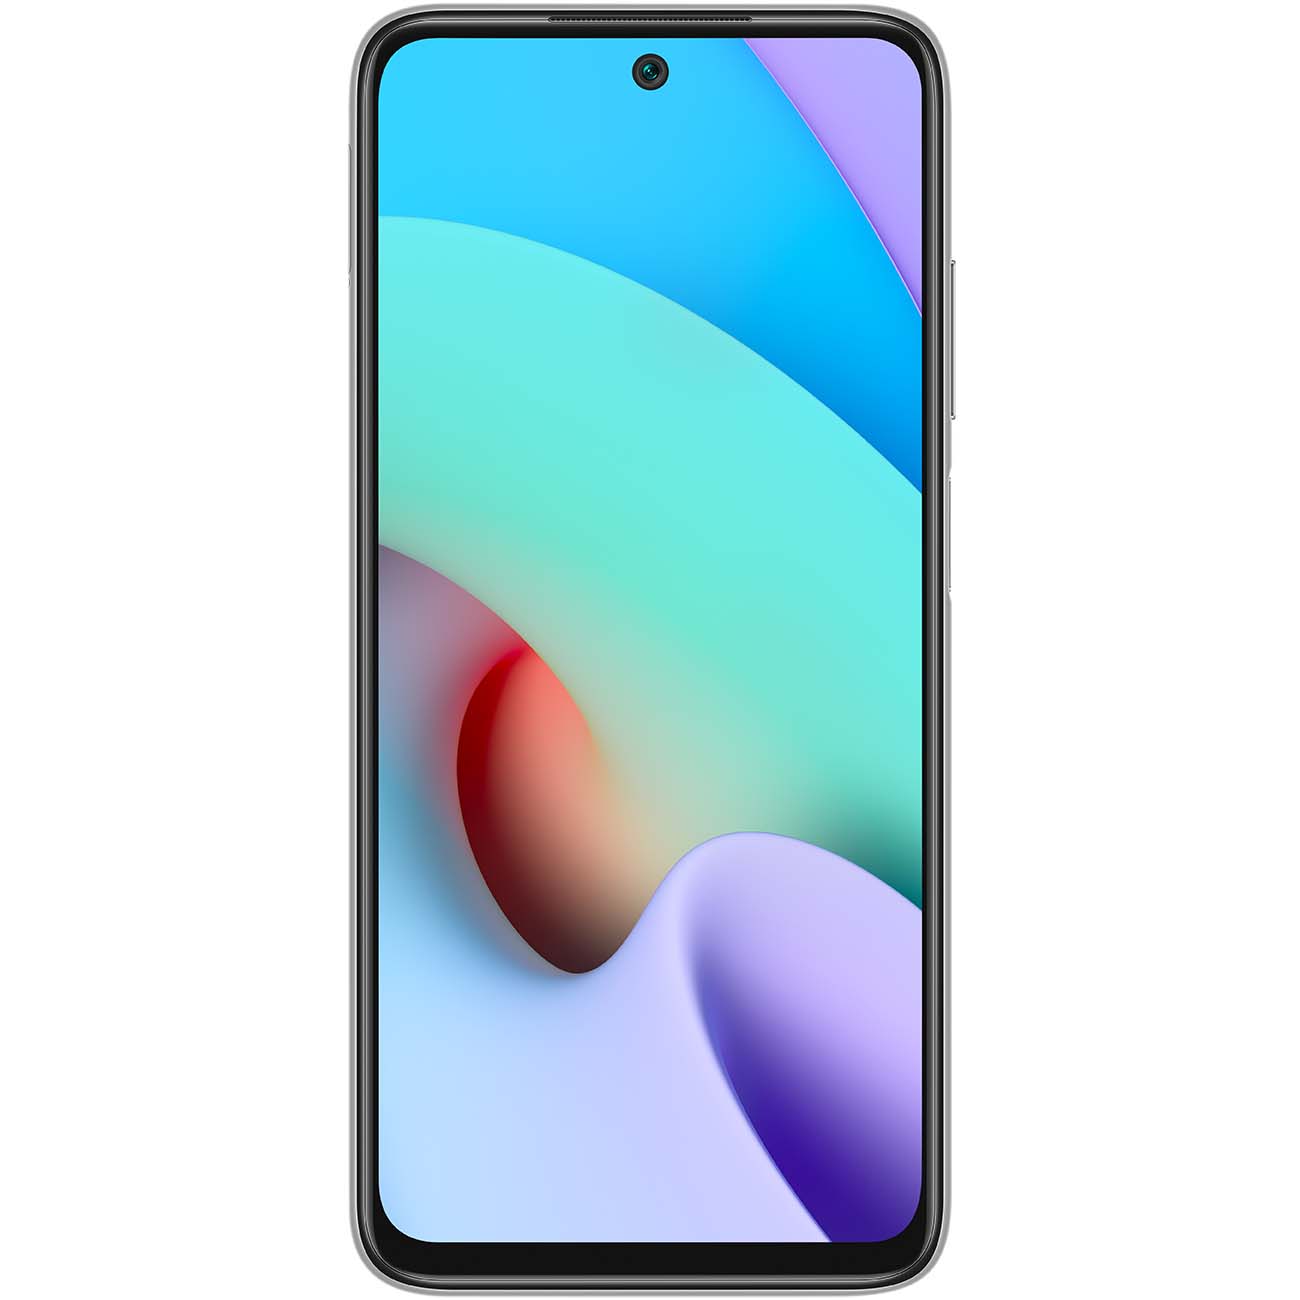 Купить смартфон xiaomi redmi 10 4+64gb pebble white Смартфоны в официальном магазине Apple, Samsung, Xiaomi. iPixel.ru Купить, заказ, кредит, рассрочка, отзывы,  характеристики, цена,  фотографии, в подарок.